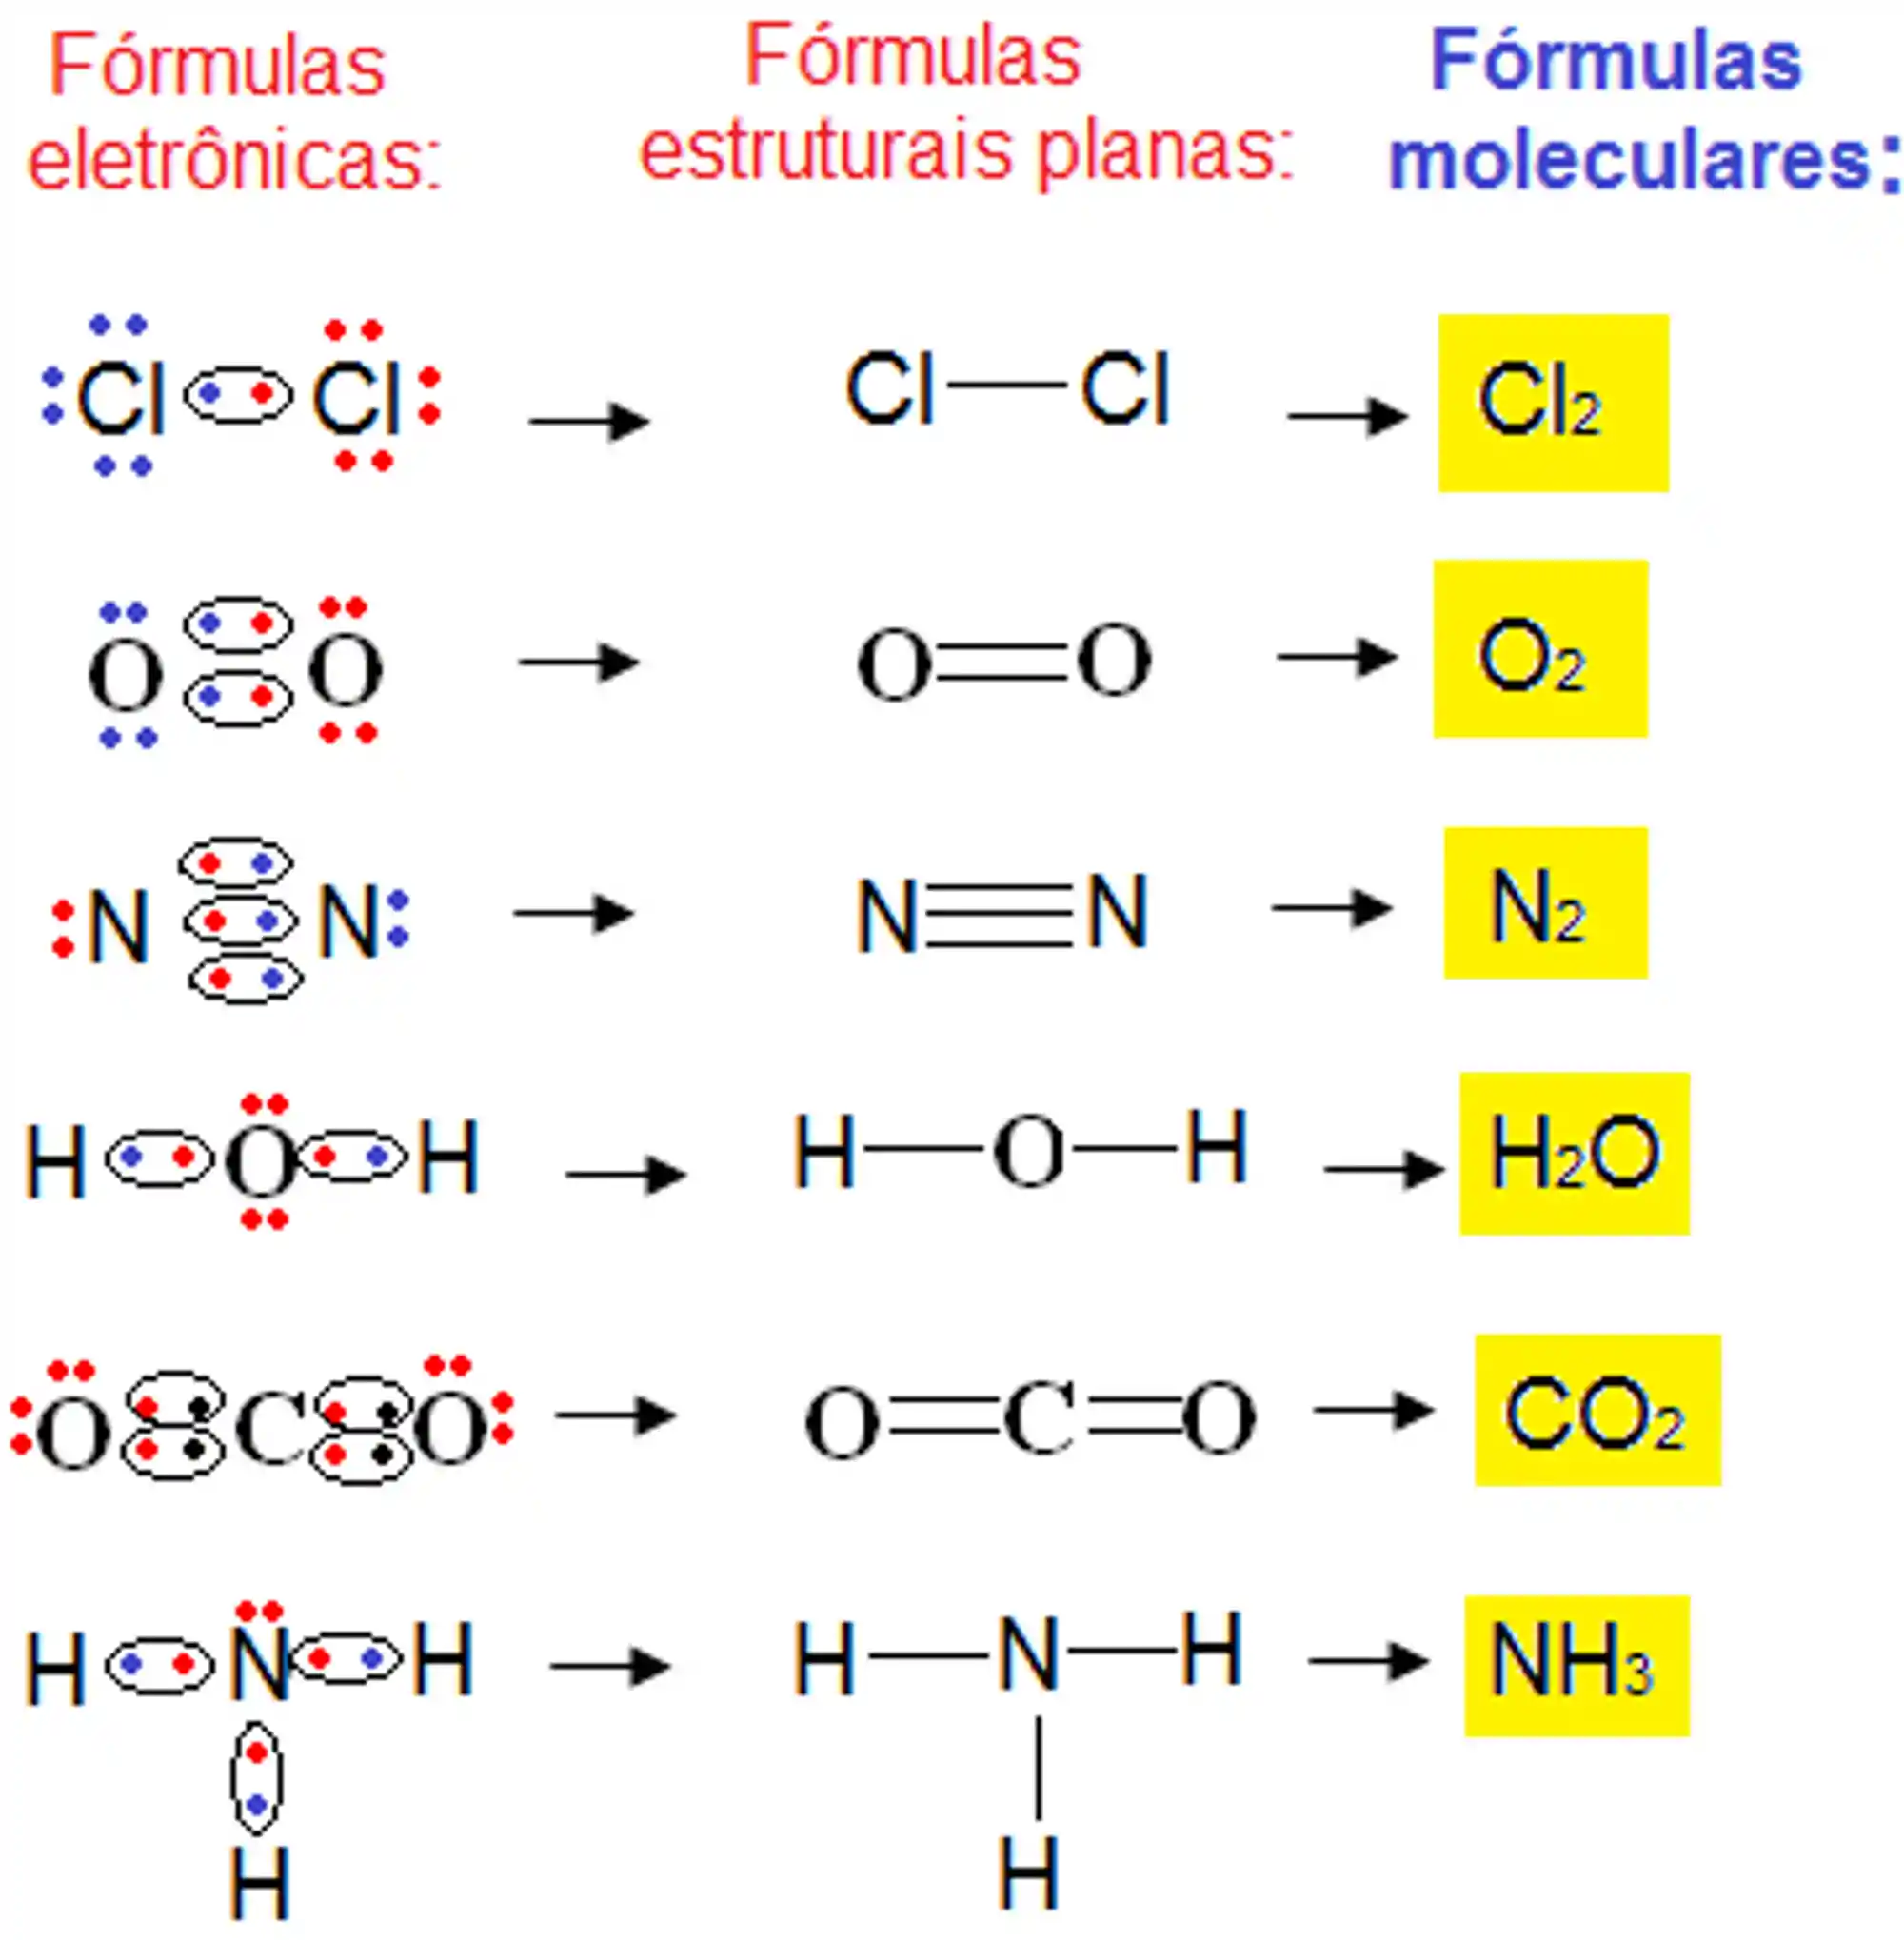 Exemplos de fórmulas moleculares